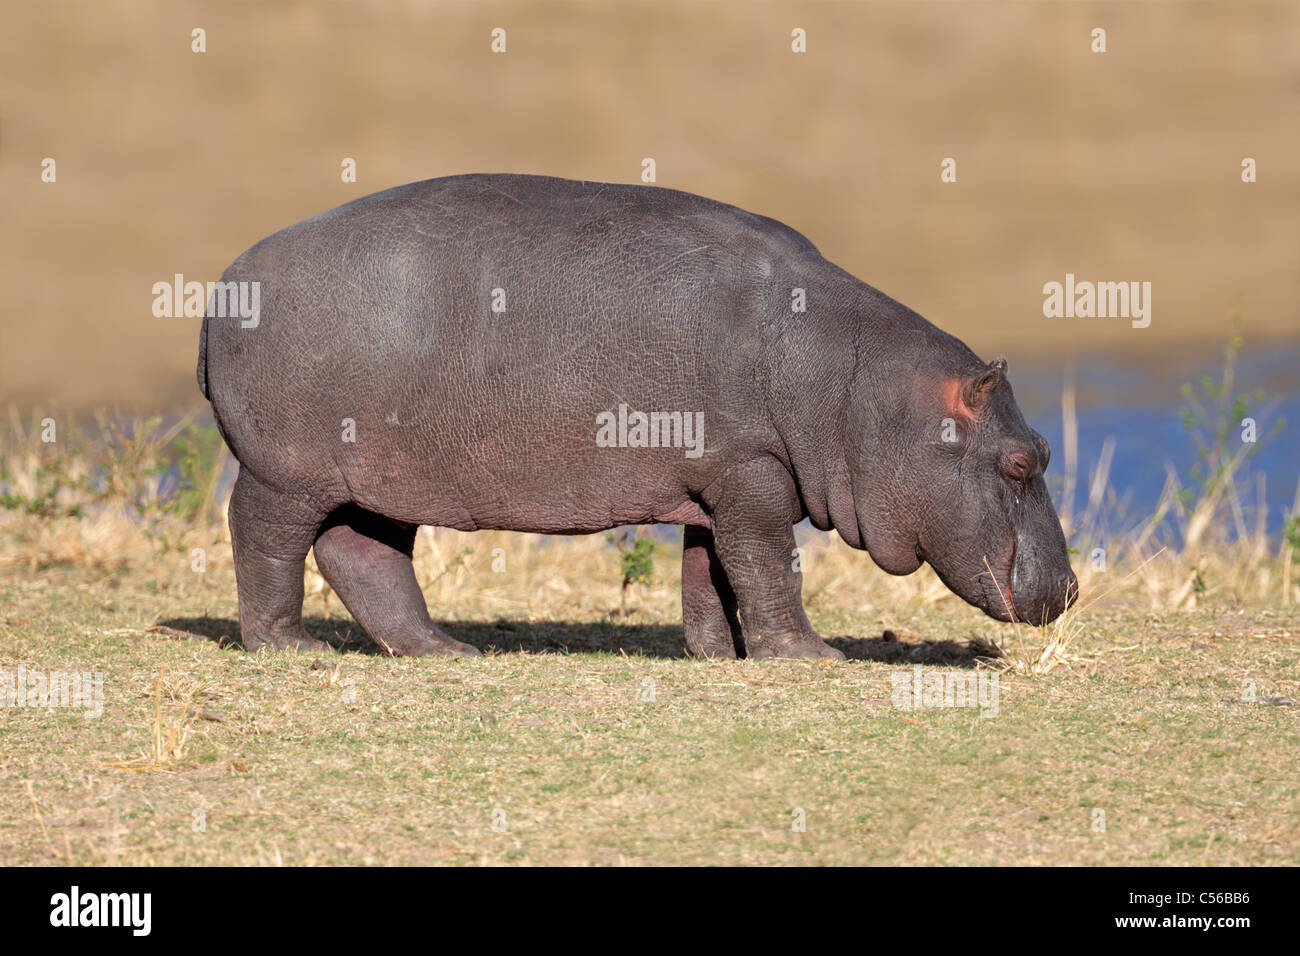 A young hippopotamus (Hippopotamus amphibius), Sabie-Sand nature reserve, South Africa Stock Photo